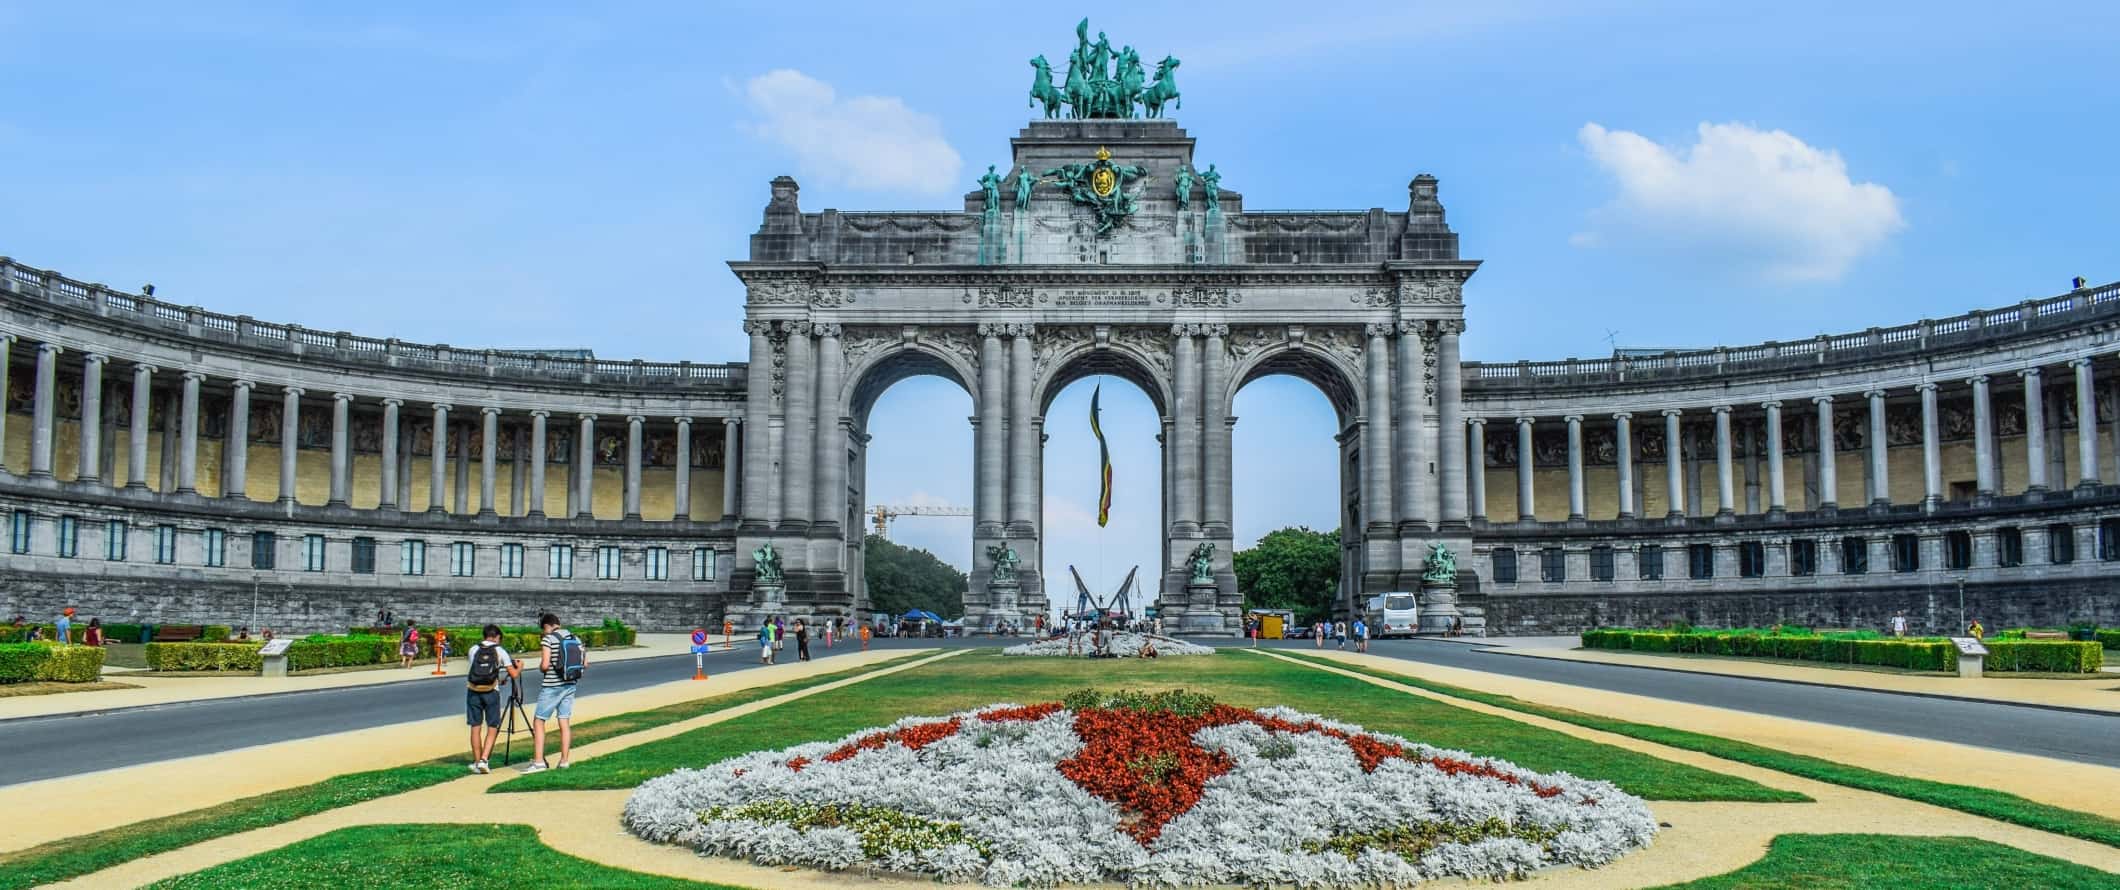 The Parc du Cinquantenaire, a u-shaped monument in Brussels, Belgium